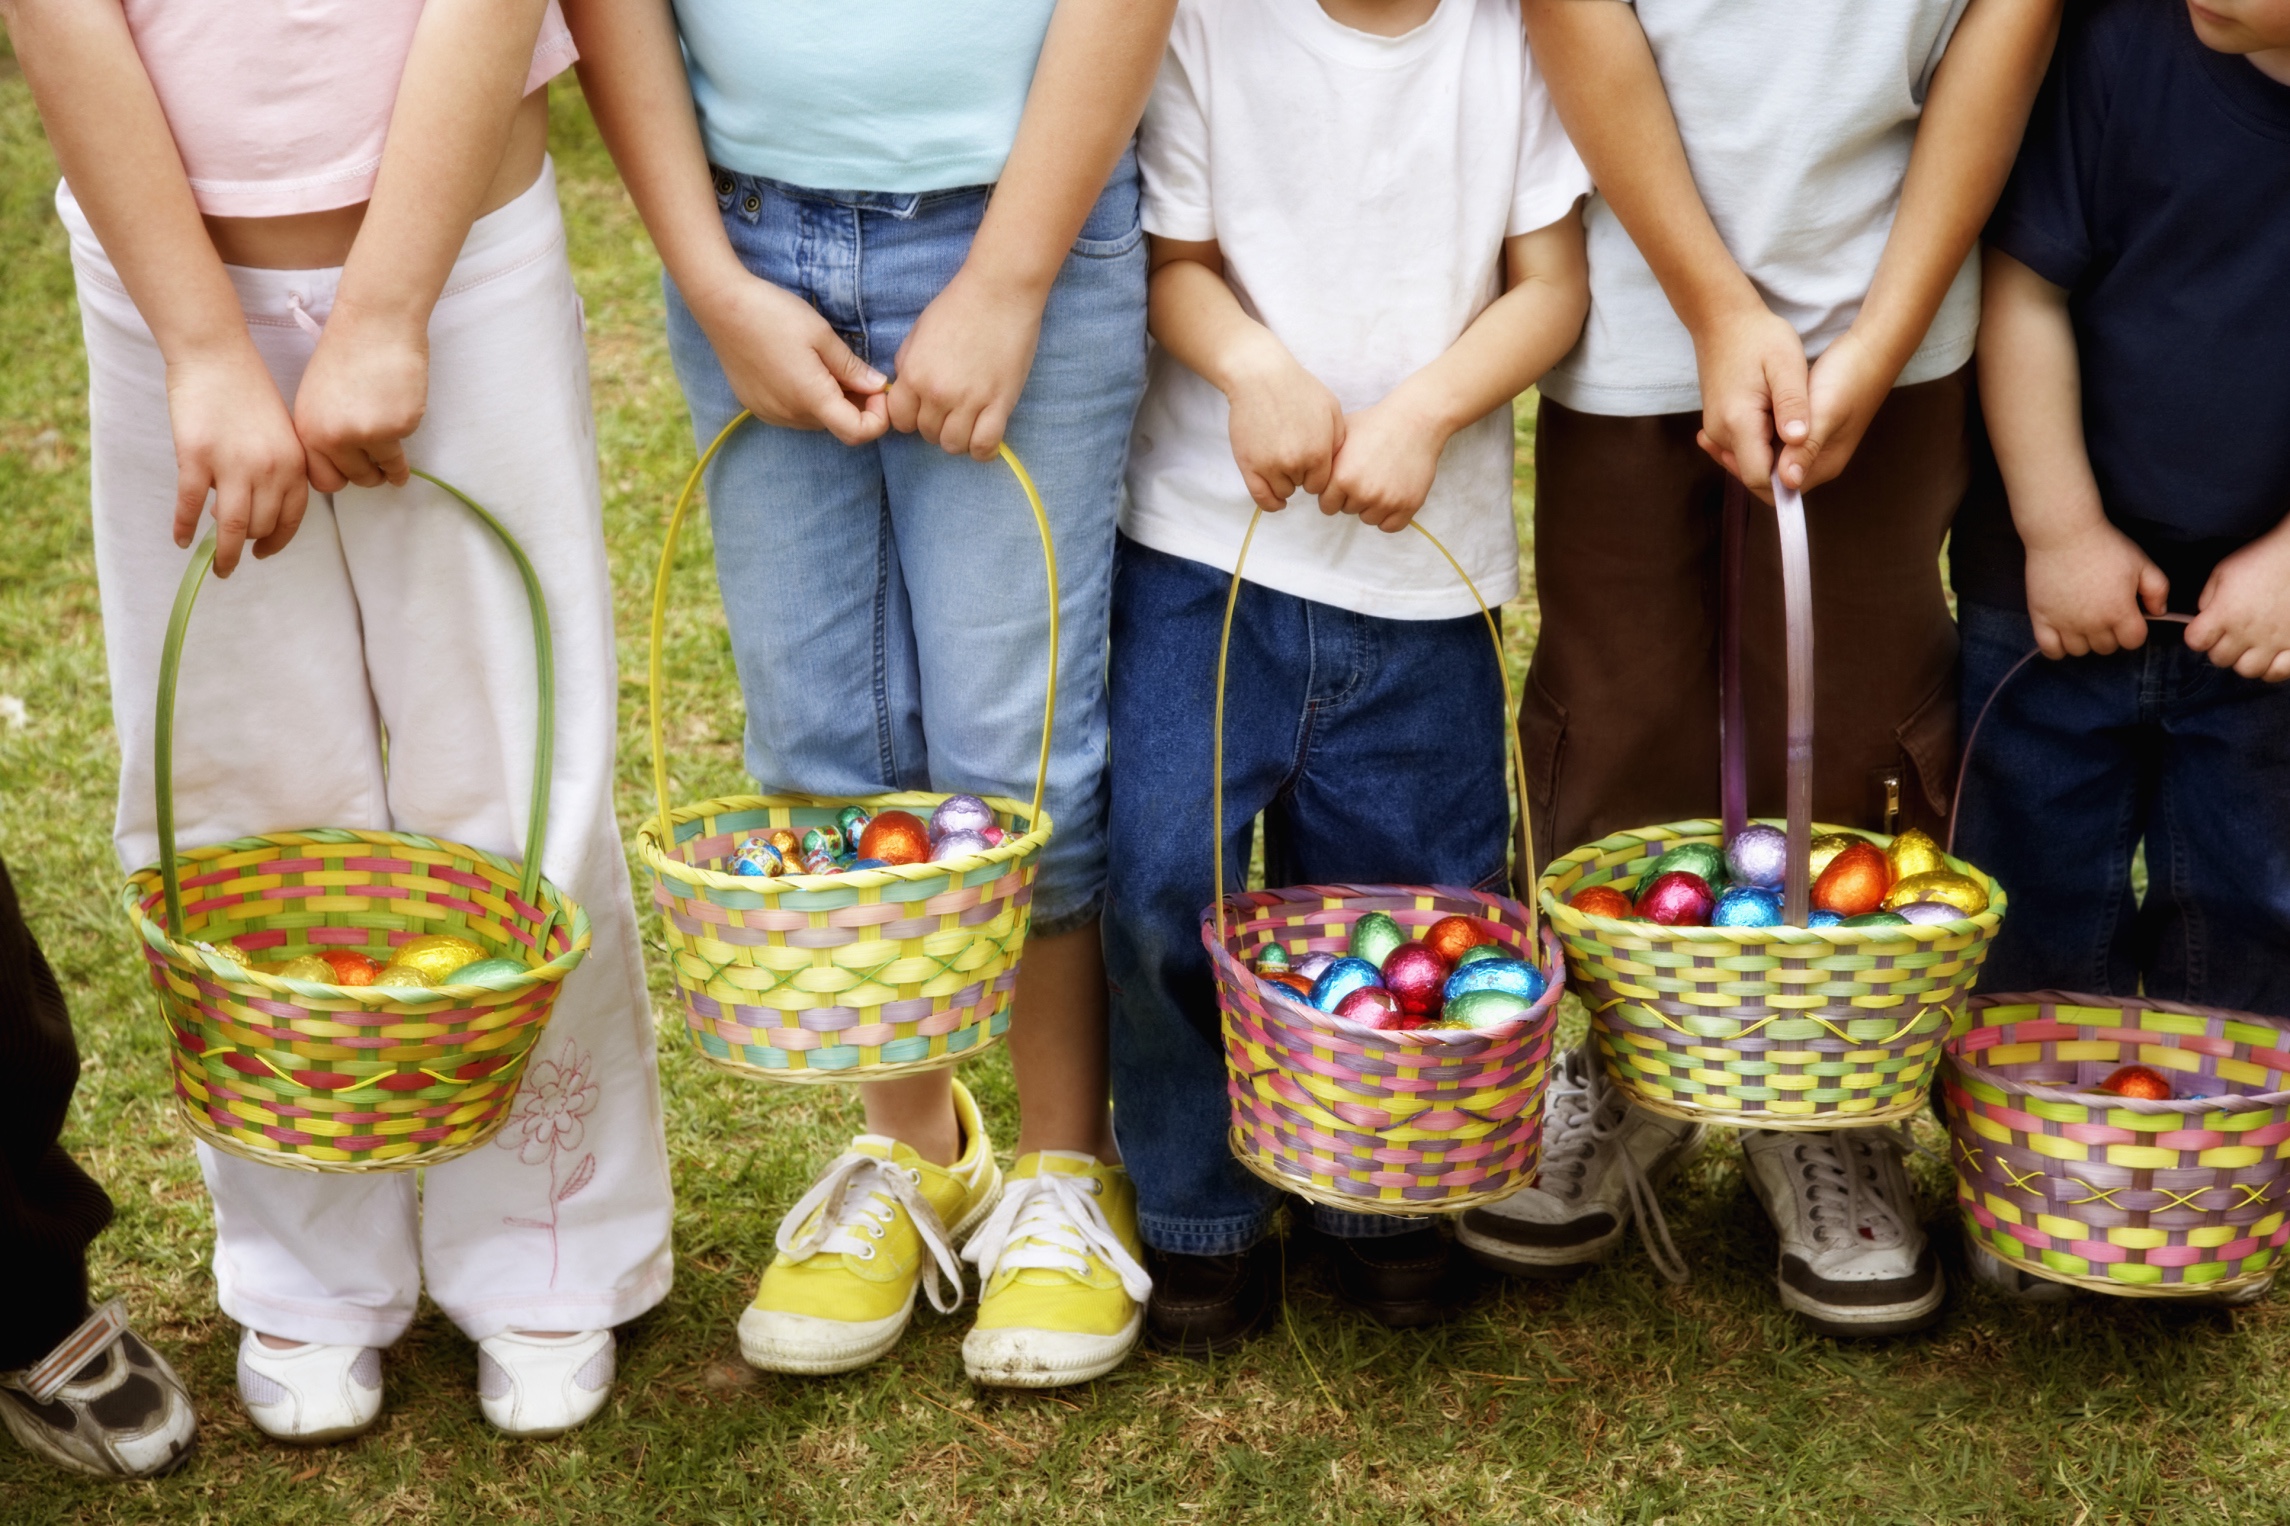 Children on Easter